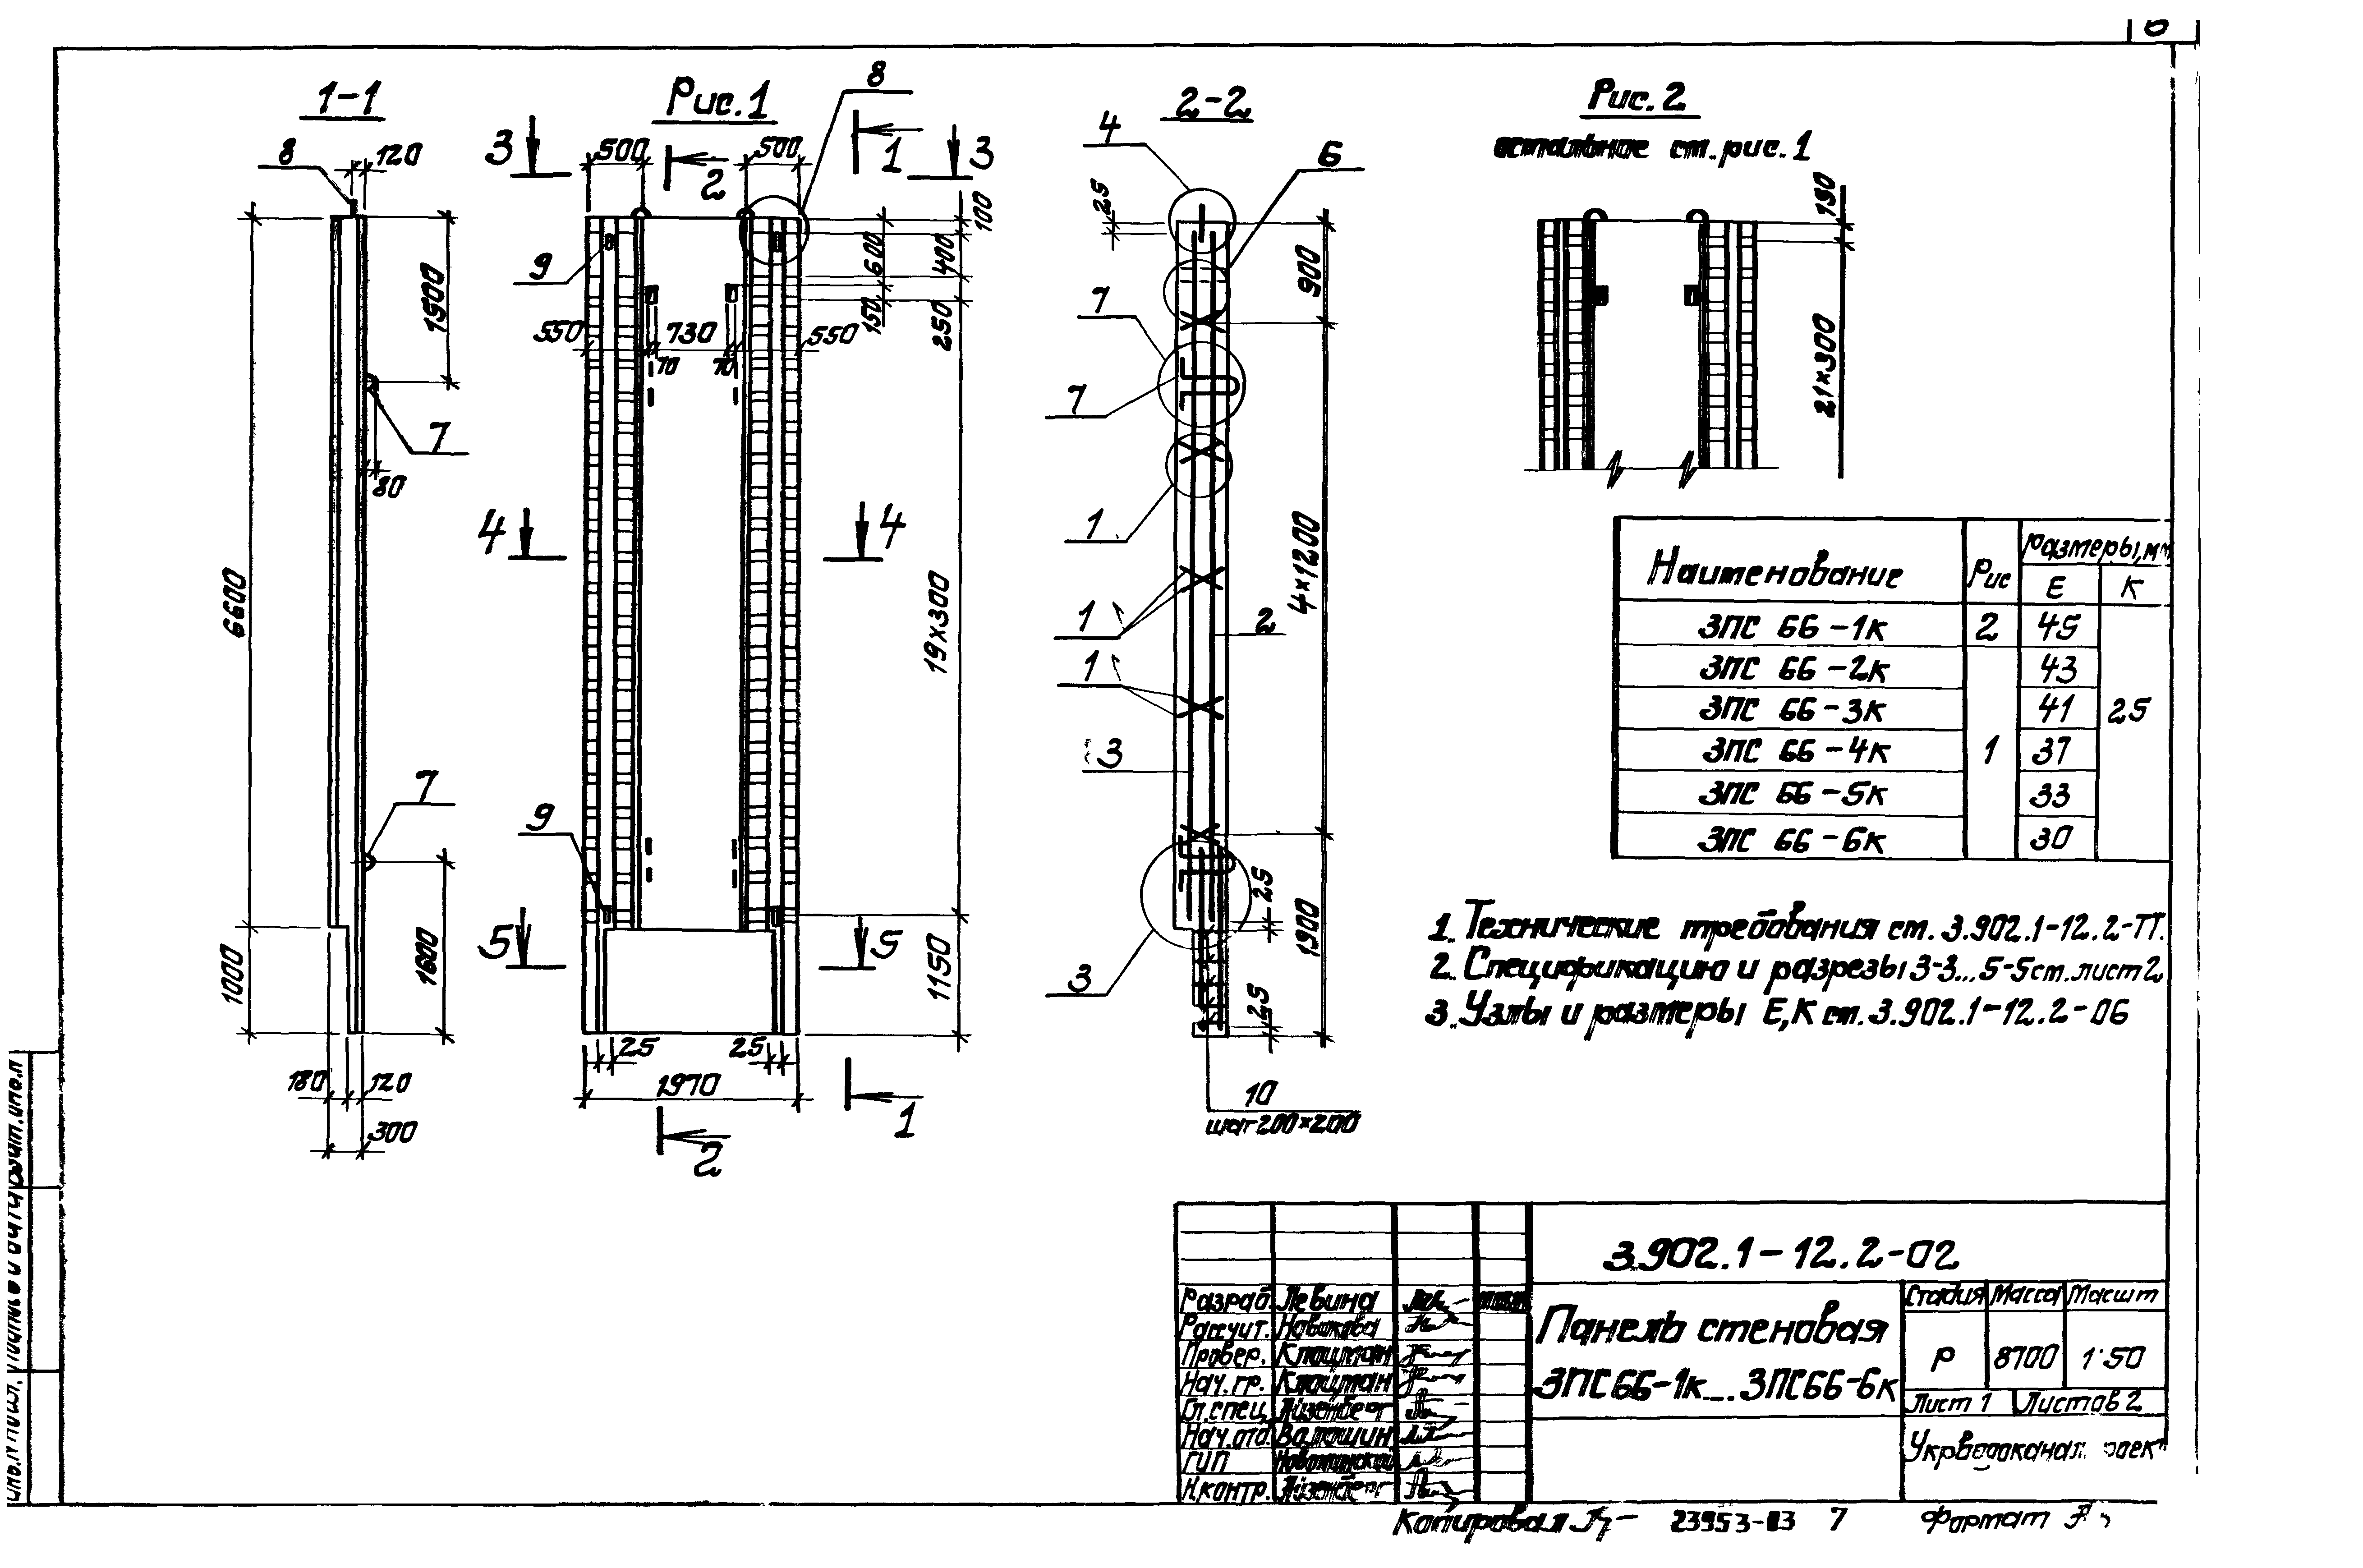 Панель стеновая 3ПС66-4к Серия 3.902.1-12, вып.2